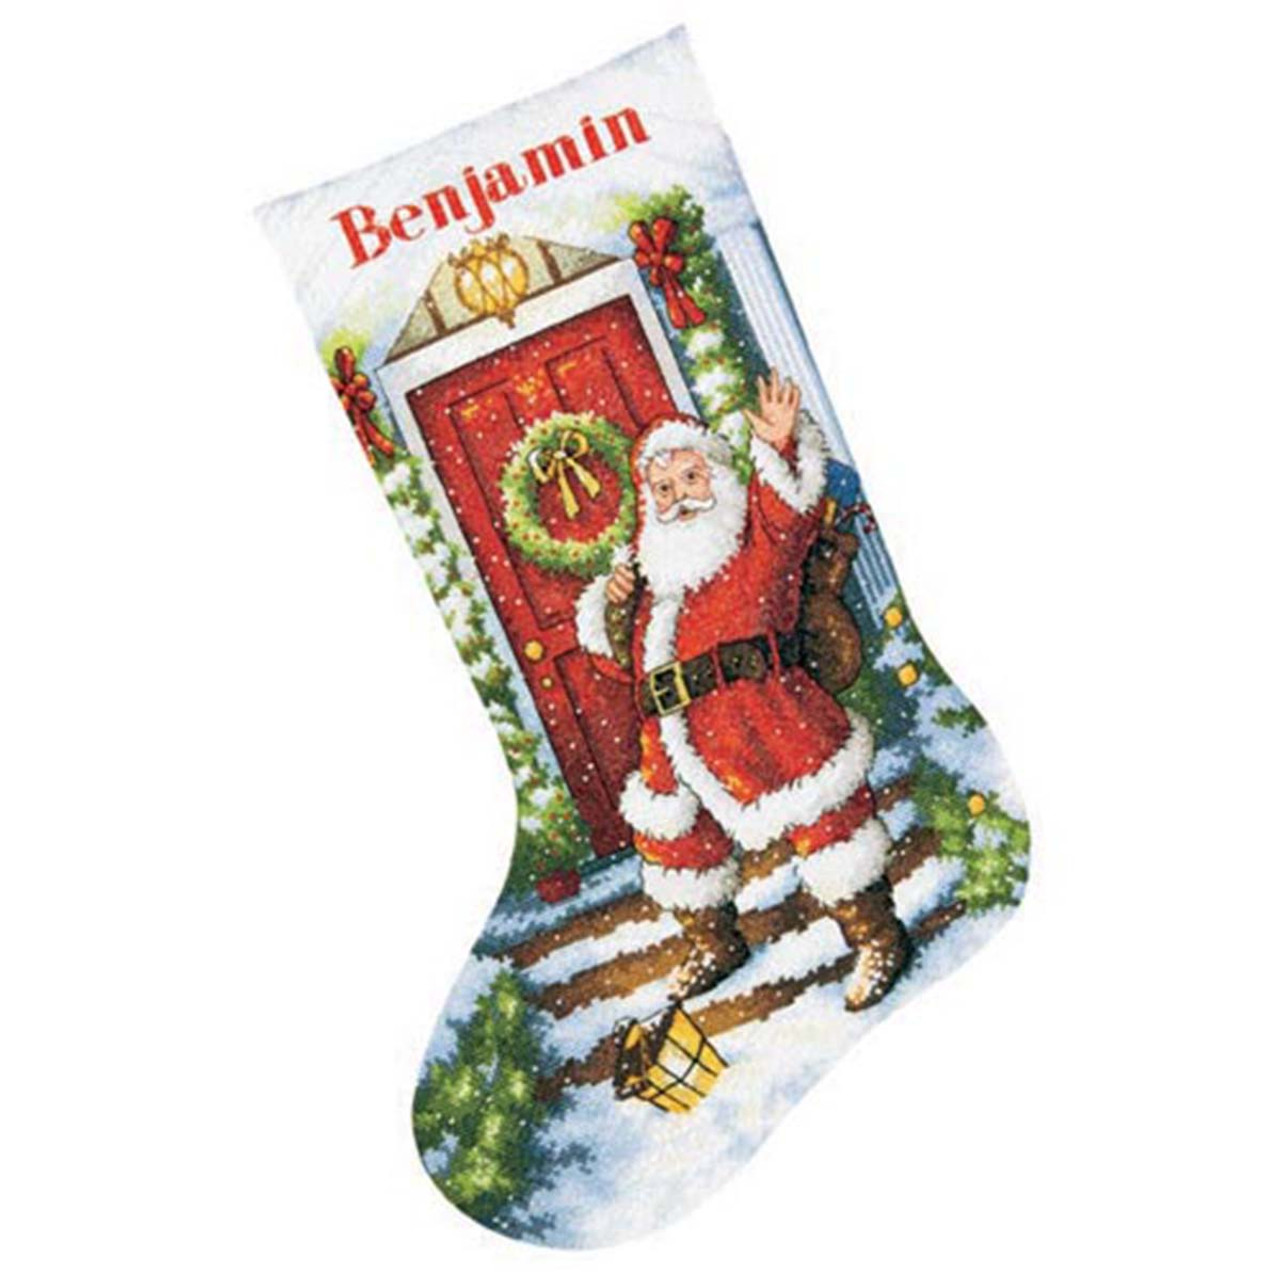 Cross Stitch Christmas Stocking Kits